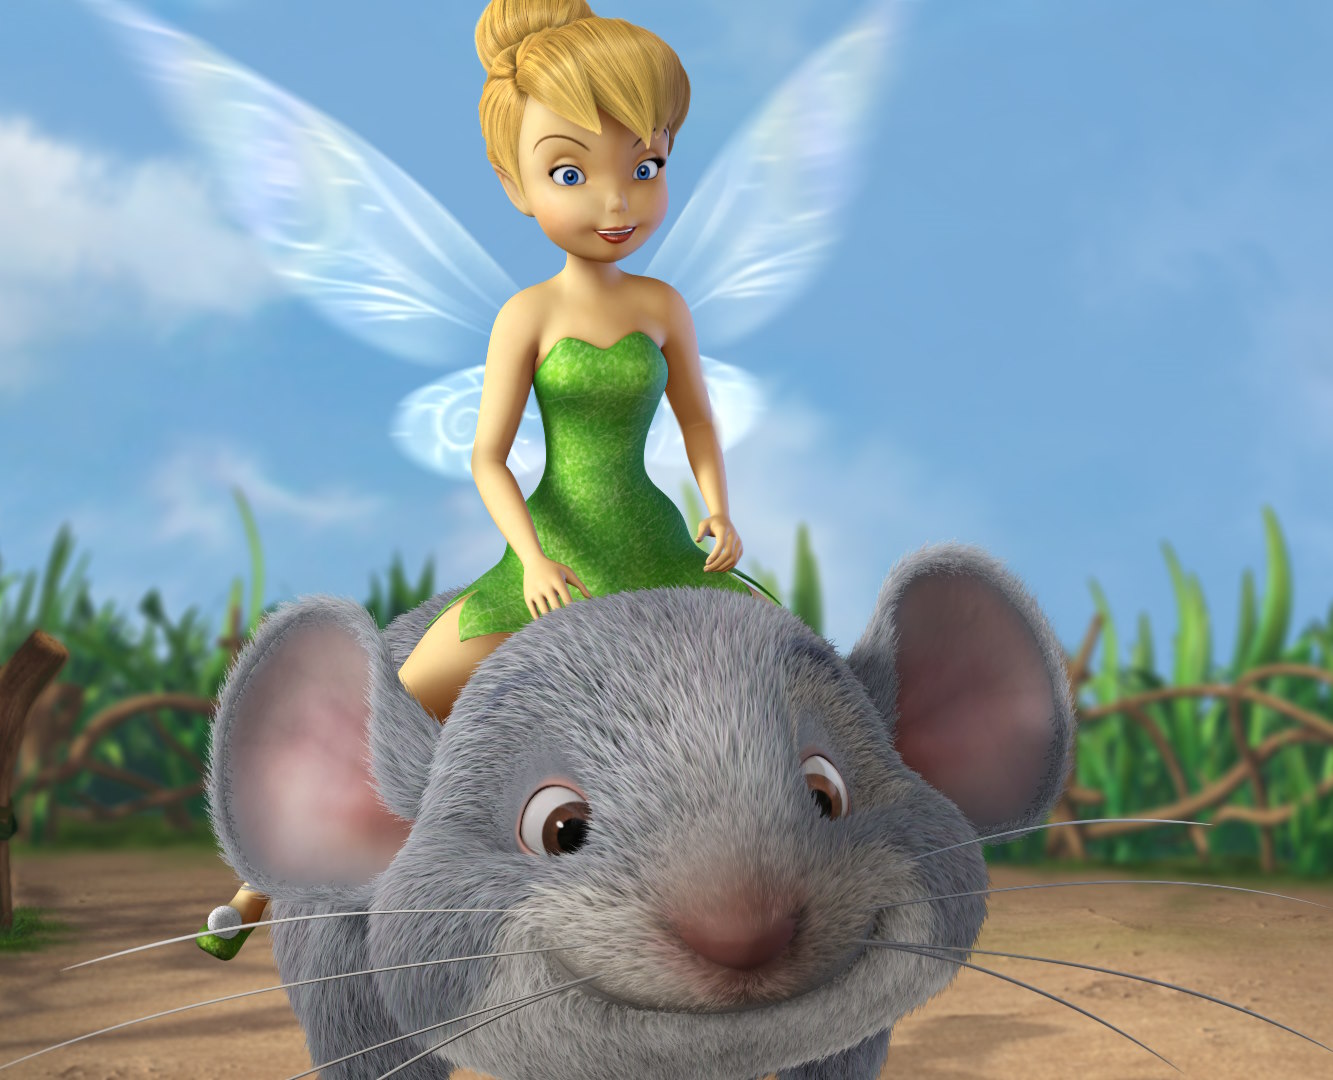 La fée Tinker Bell monte une souris